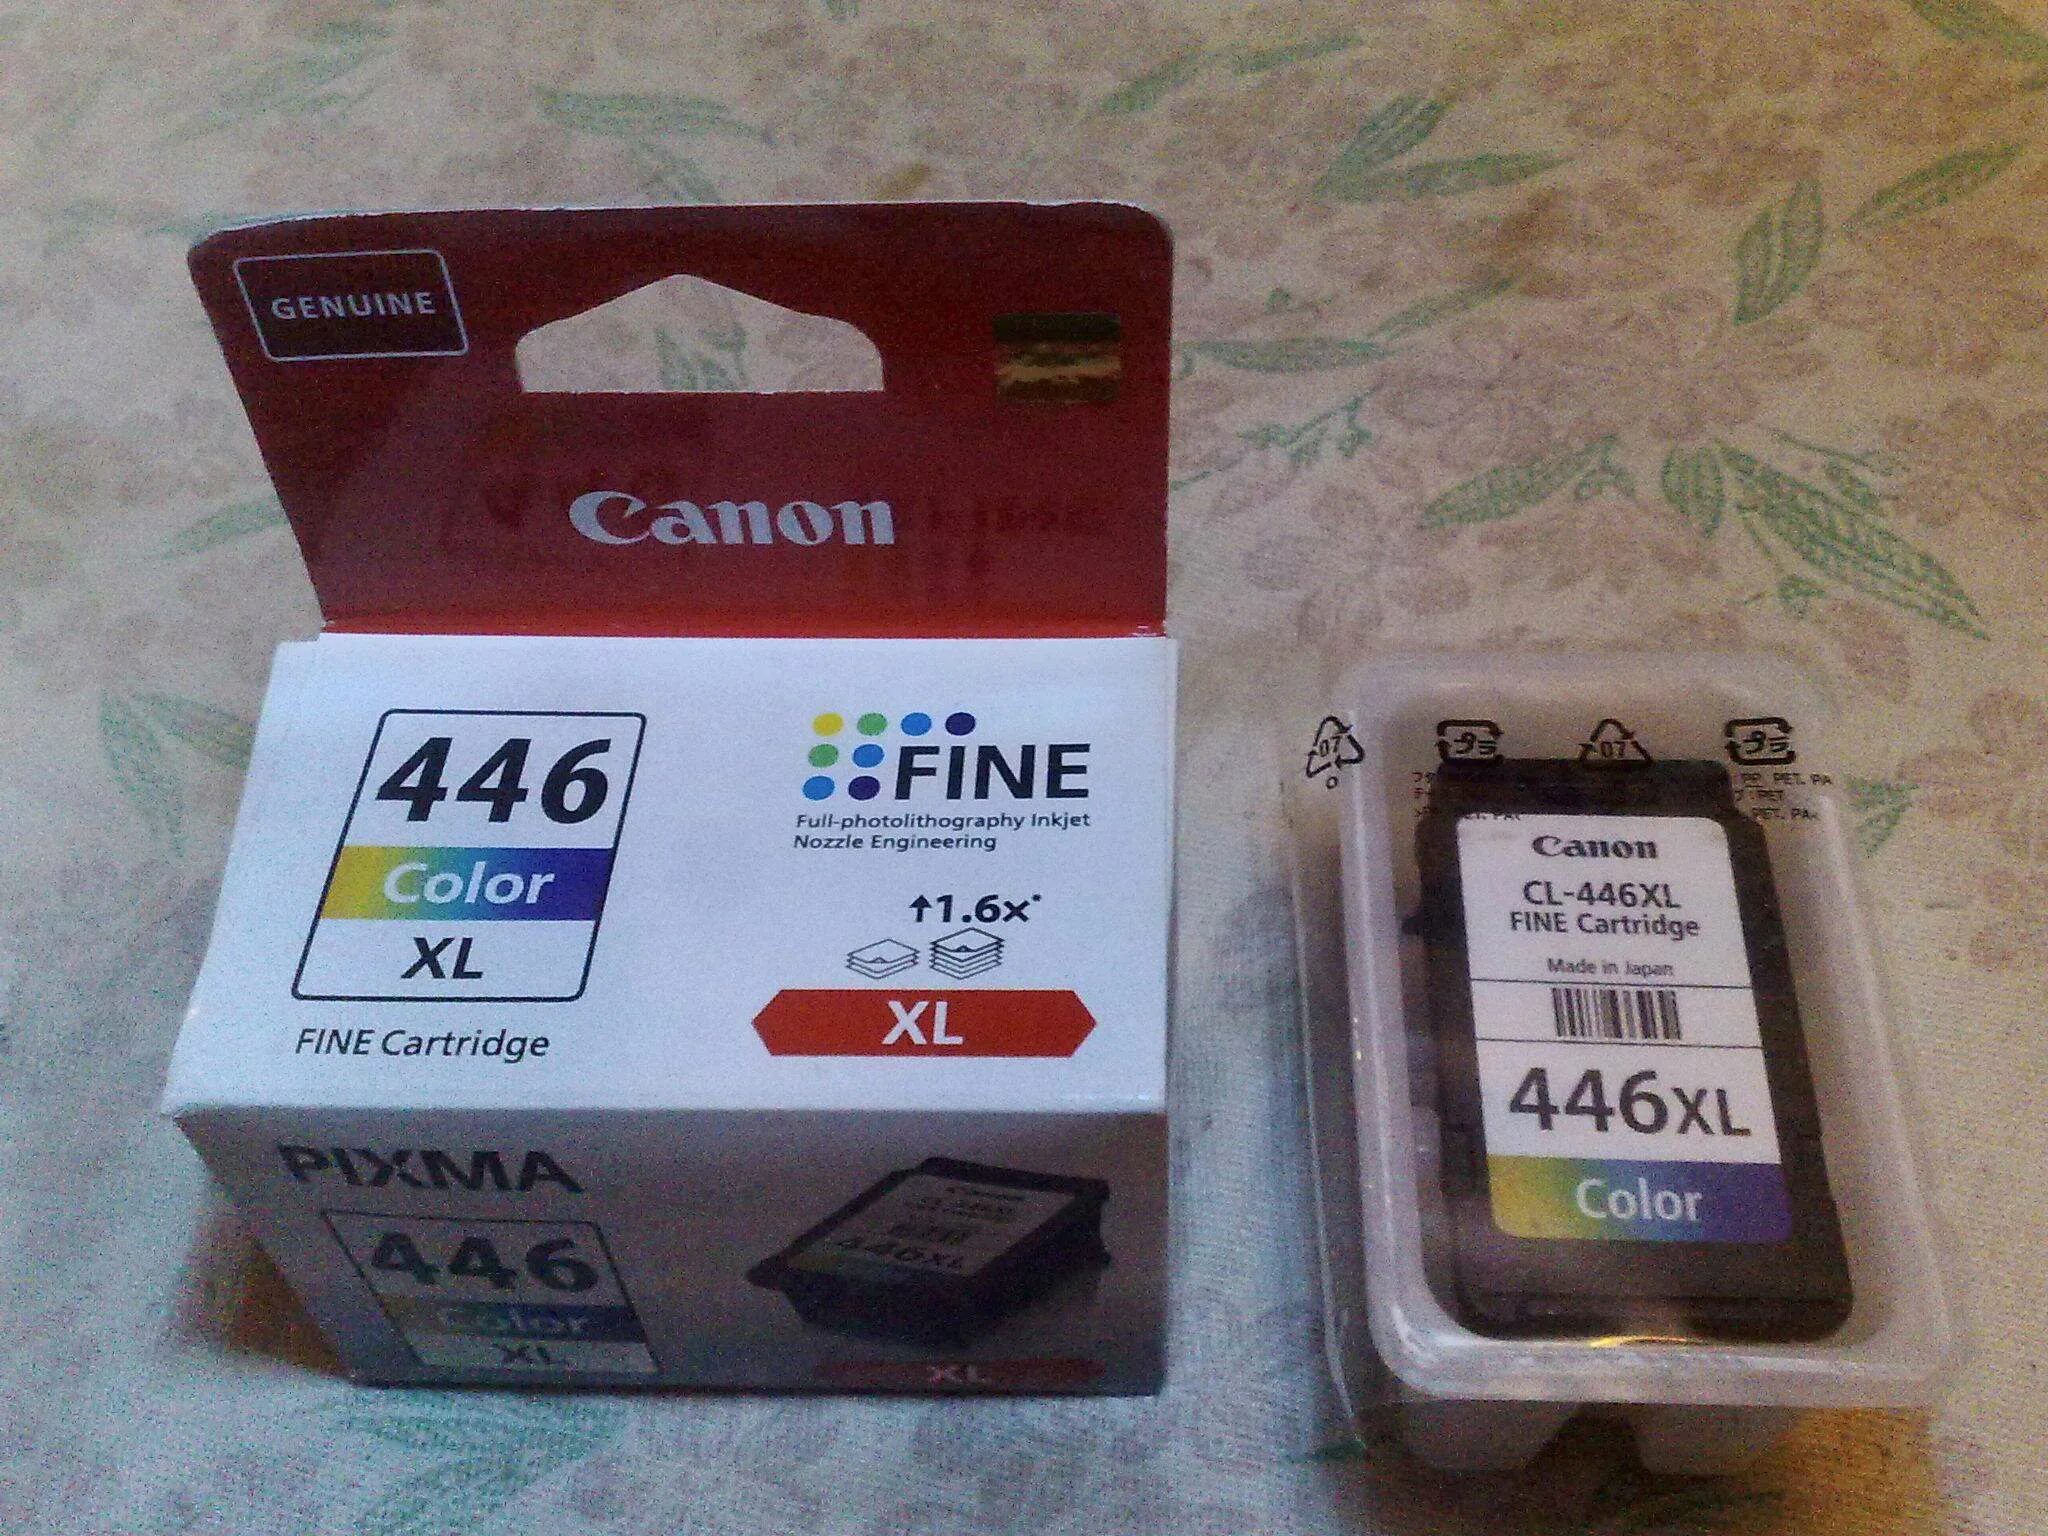 Canon 446 купить. Canon CL-446xl. Canon CL-446 Fine Cartridge. Canon CL 446 Color. 446 XL Canon.